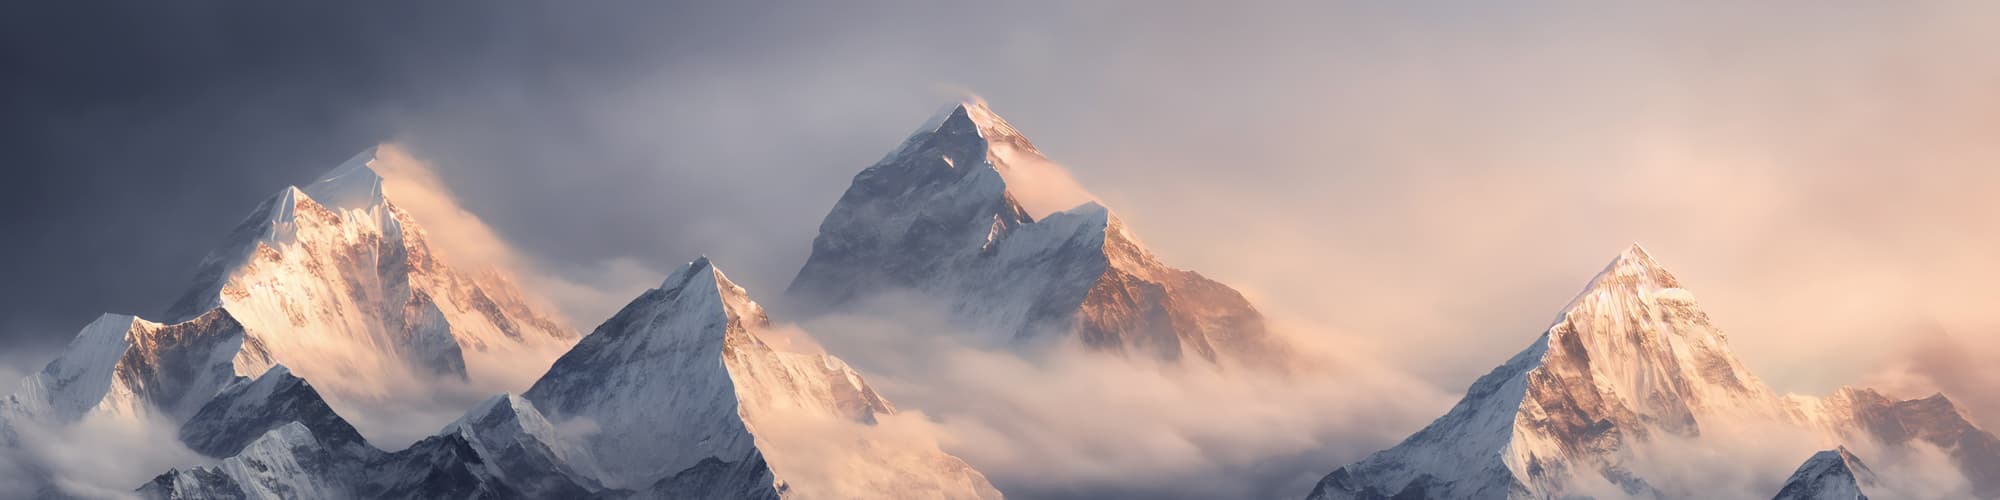 Trek Everest © Josh / Adobe Stock